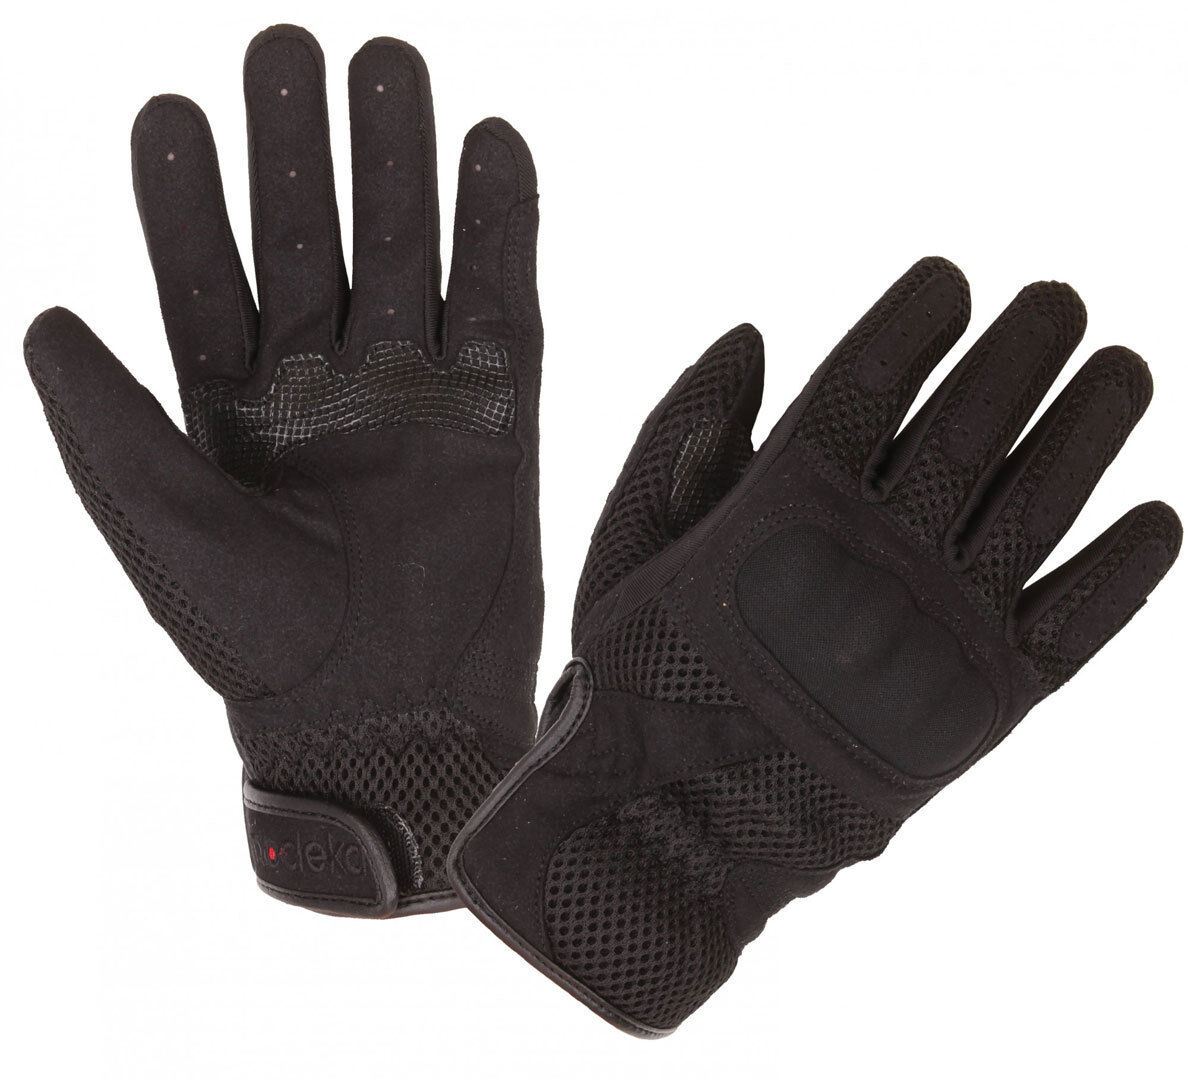 Modeka Mesh Motorcycle Gloves  - Black